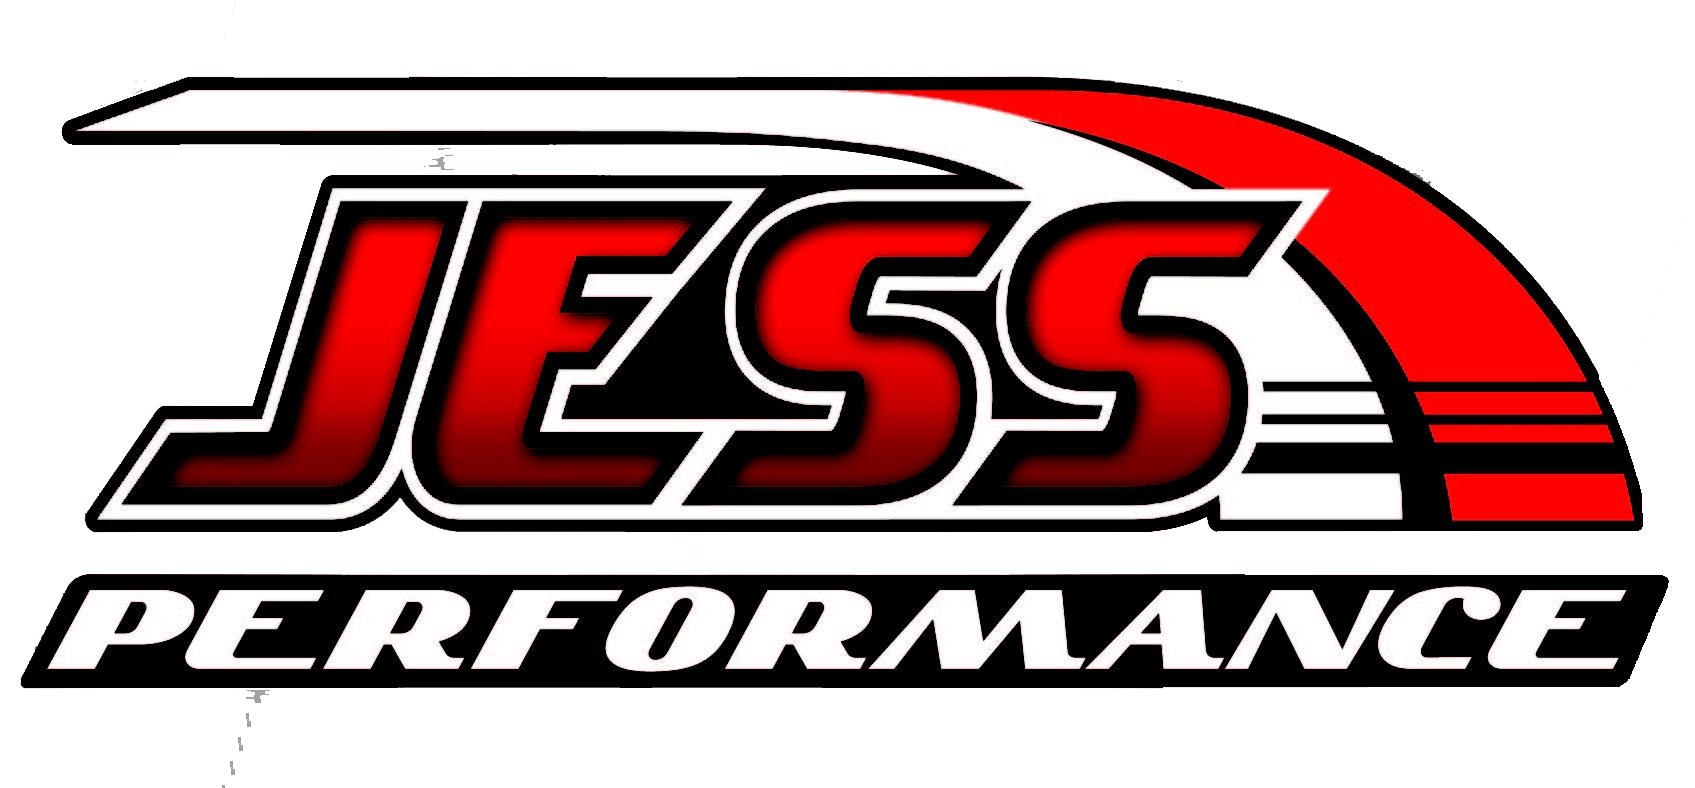 Diesel Mechanic Shop Logo - Jess – Diesel Truck Mechanic, Diesel Engine Repair, Diesel ...